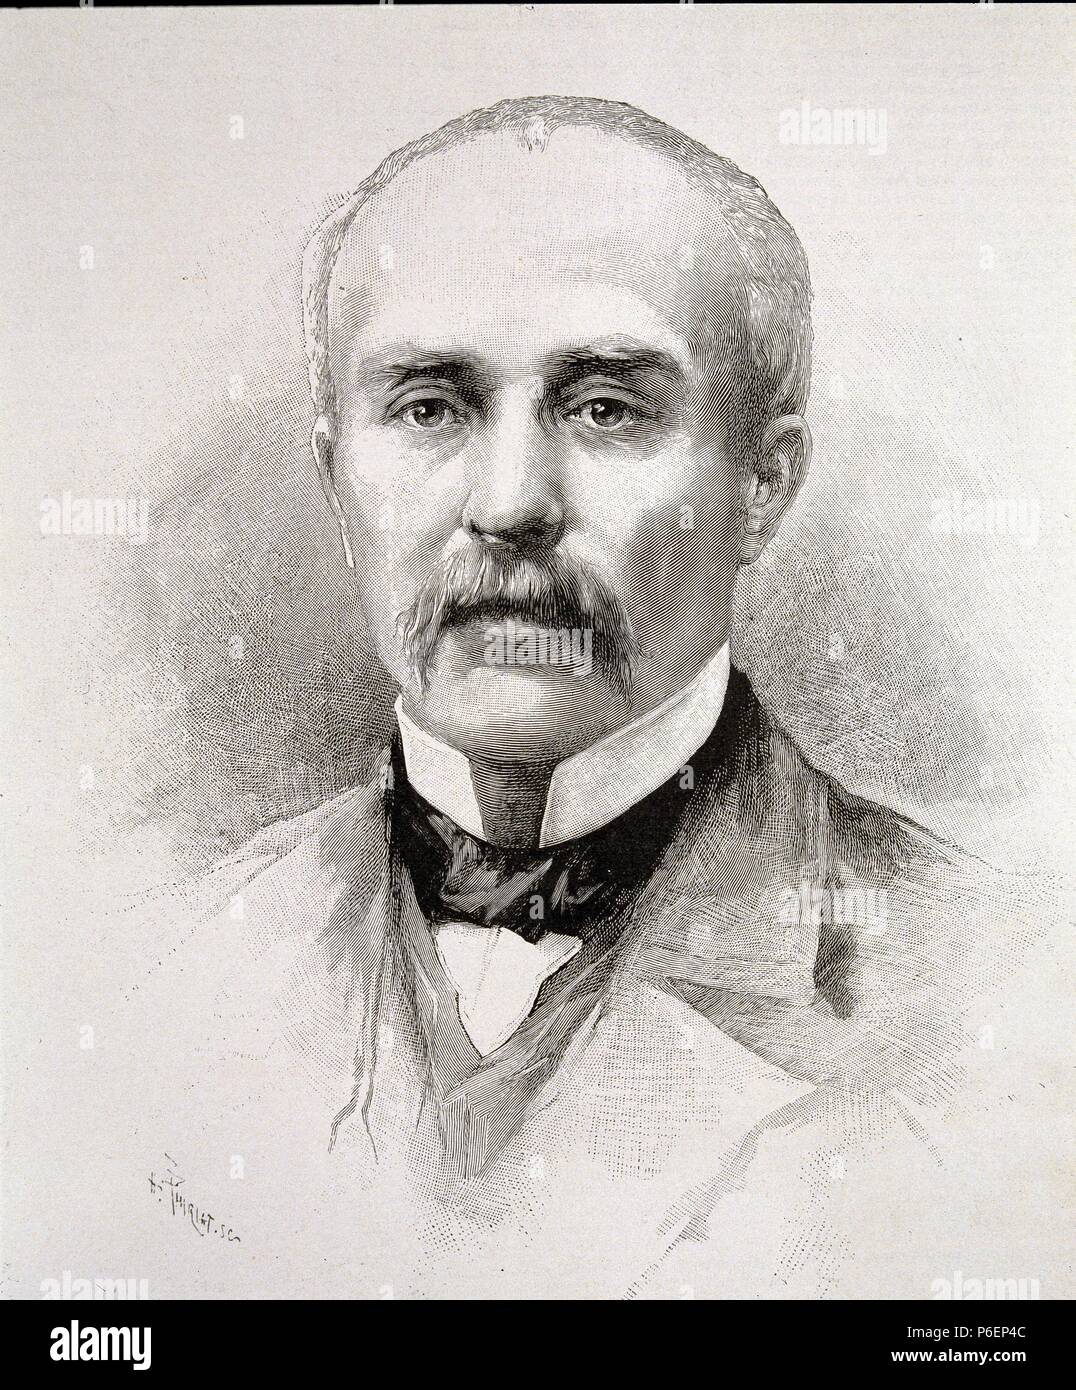 CLEMENCEAU, GEORGES. POLITICO FRANCES. 1841-1929. GRABADO DE L' ILLUSTRATION, A¿O 1893. Stock Photo